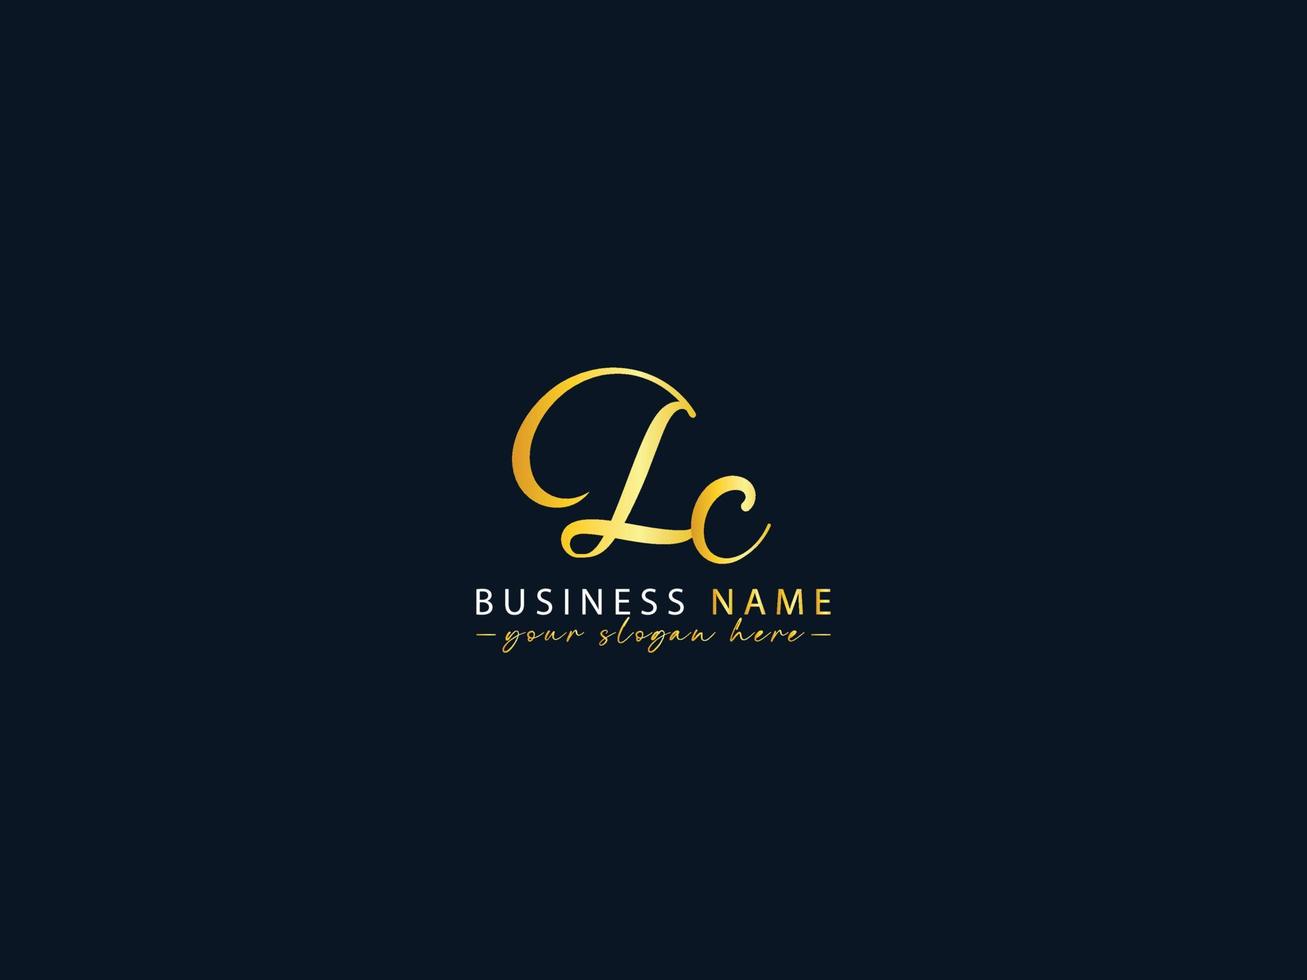 ícone colorido do logotipo lc, vetor minimalista da letra do logotipo lc